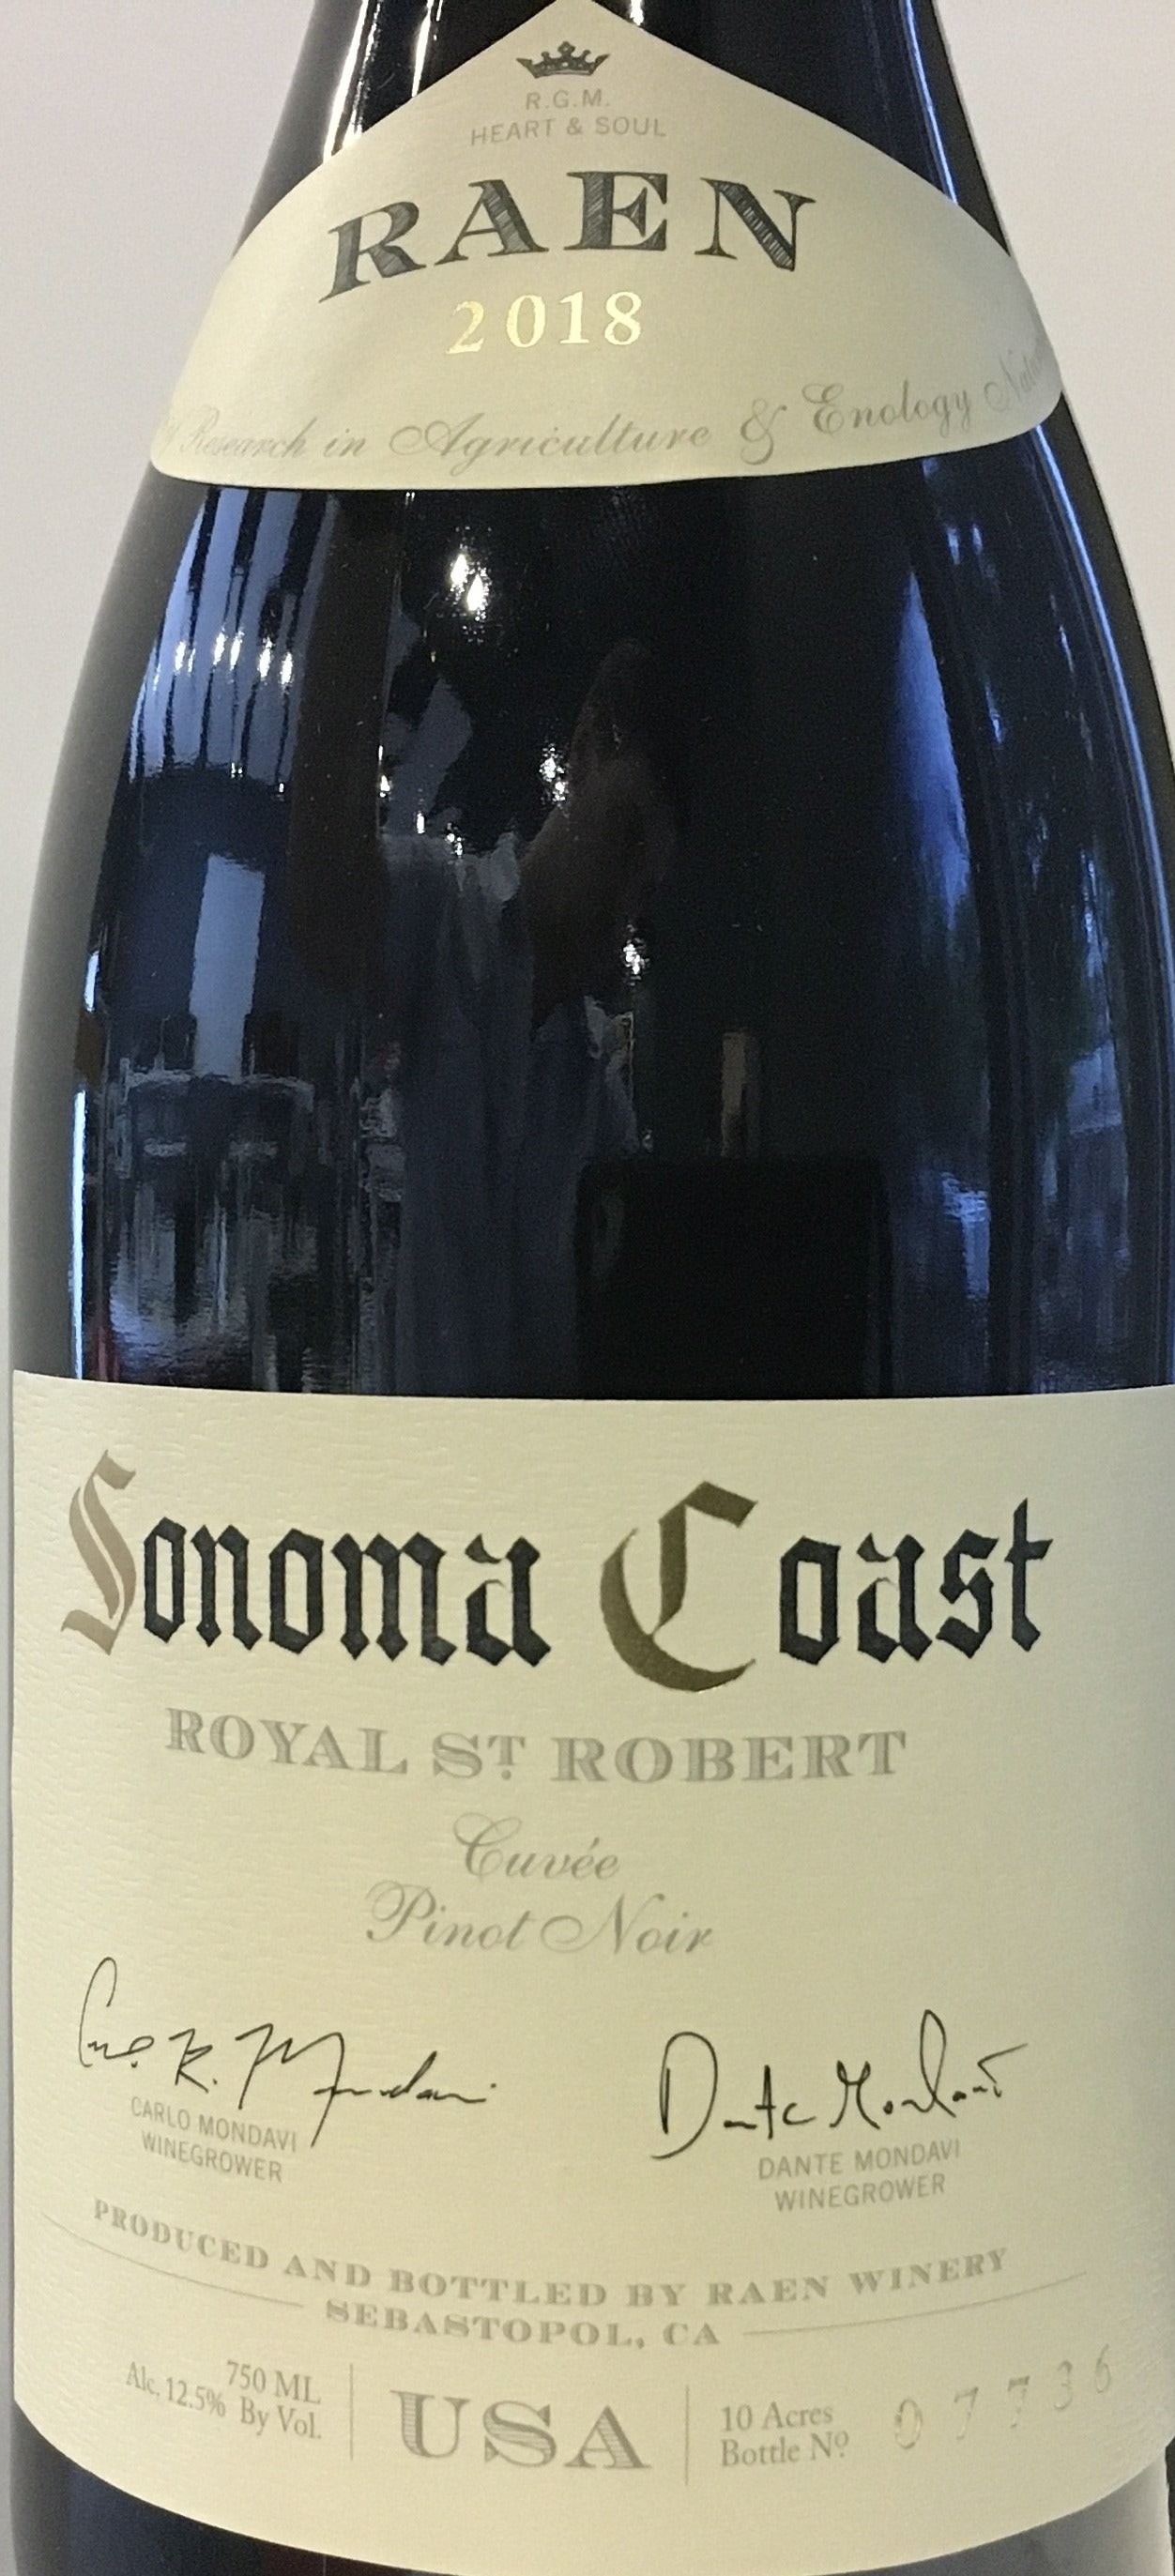 Raen 'Royal St Robert' - Somona Coast Pinot Noir